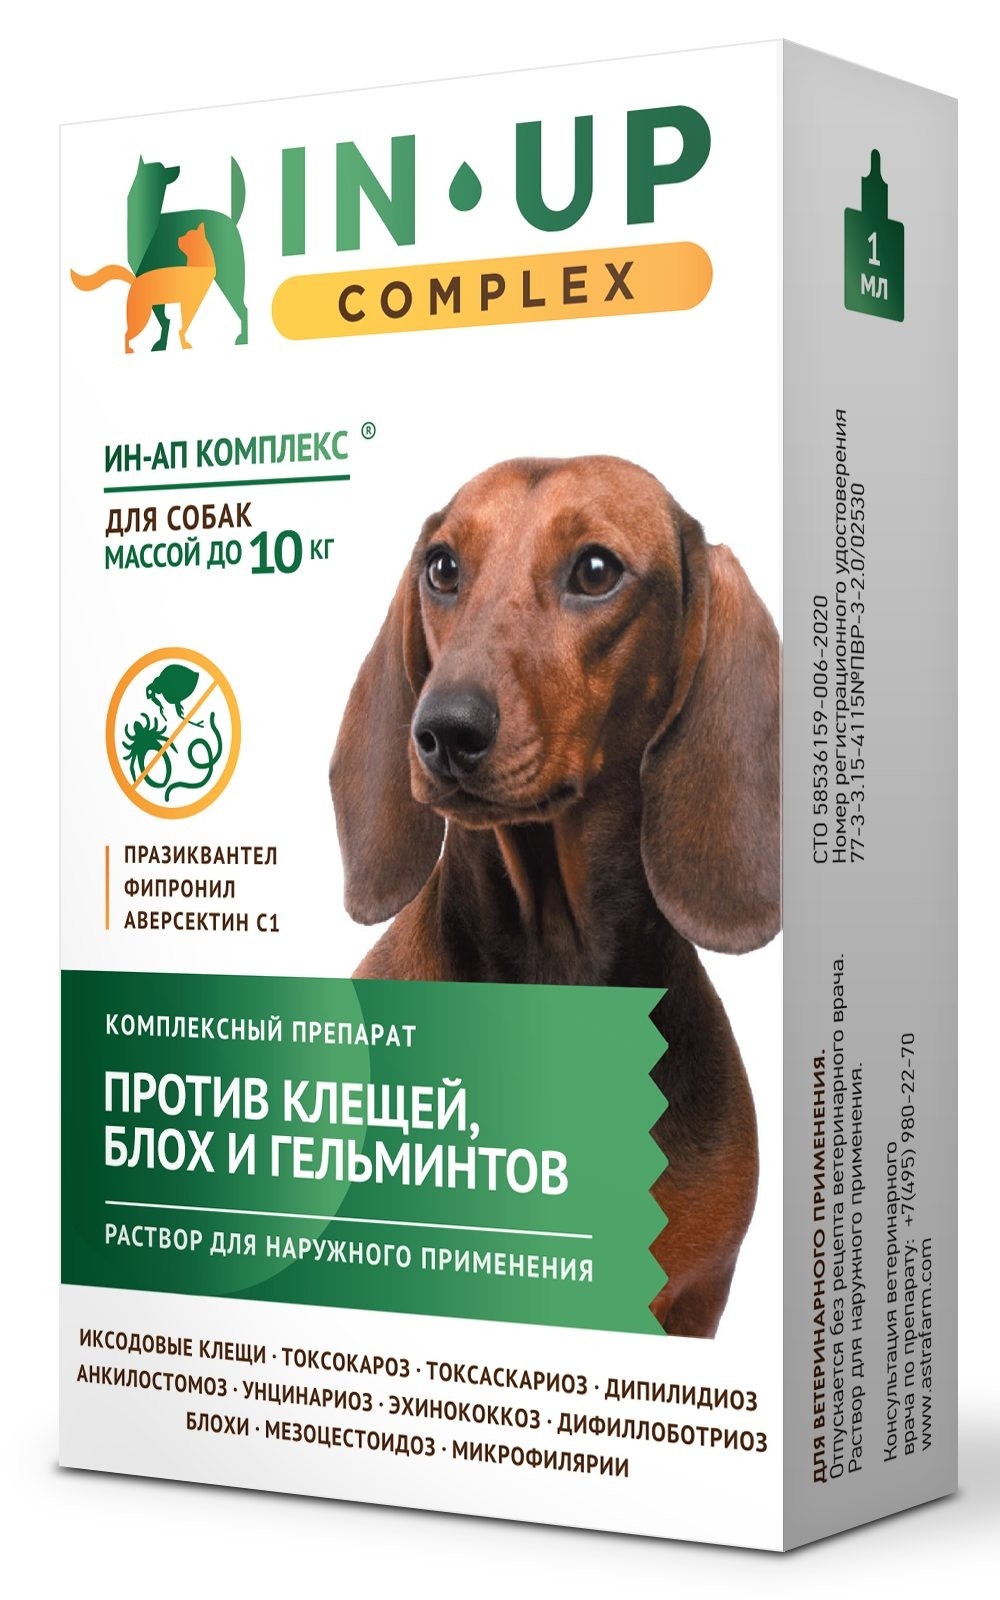 Астрафарм Астрафарм иН-АП комплекс для собак массой до 10 кг против блох, клещей, вшей, власоедов и гельминтов (21 г)